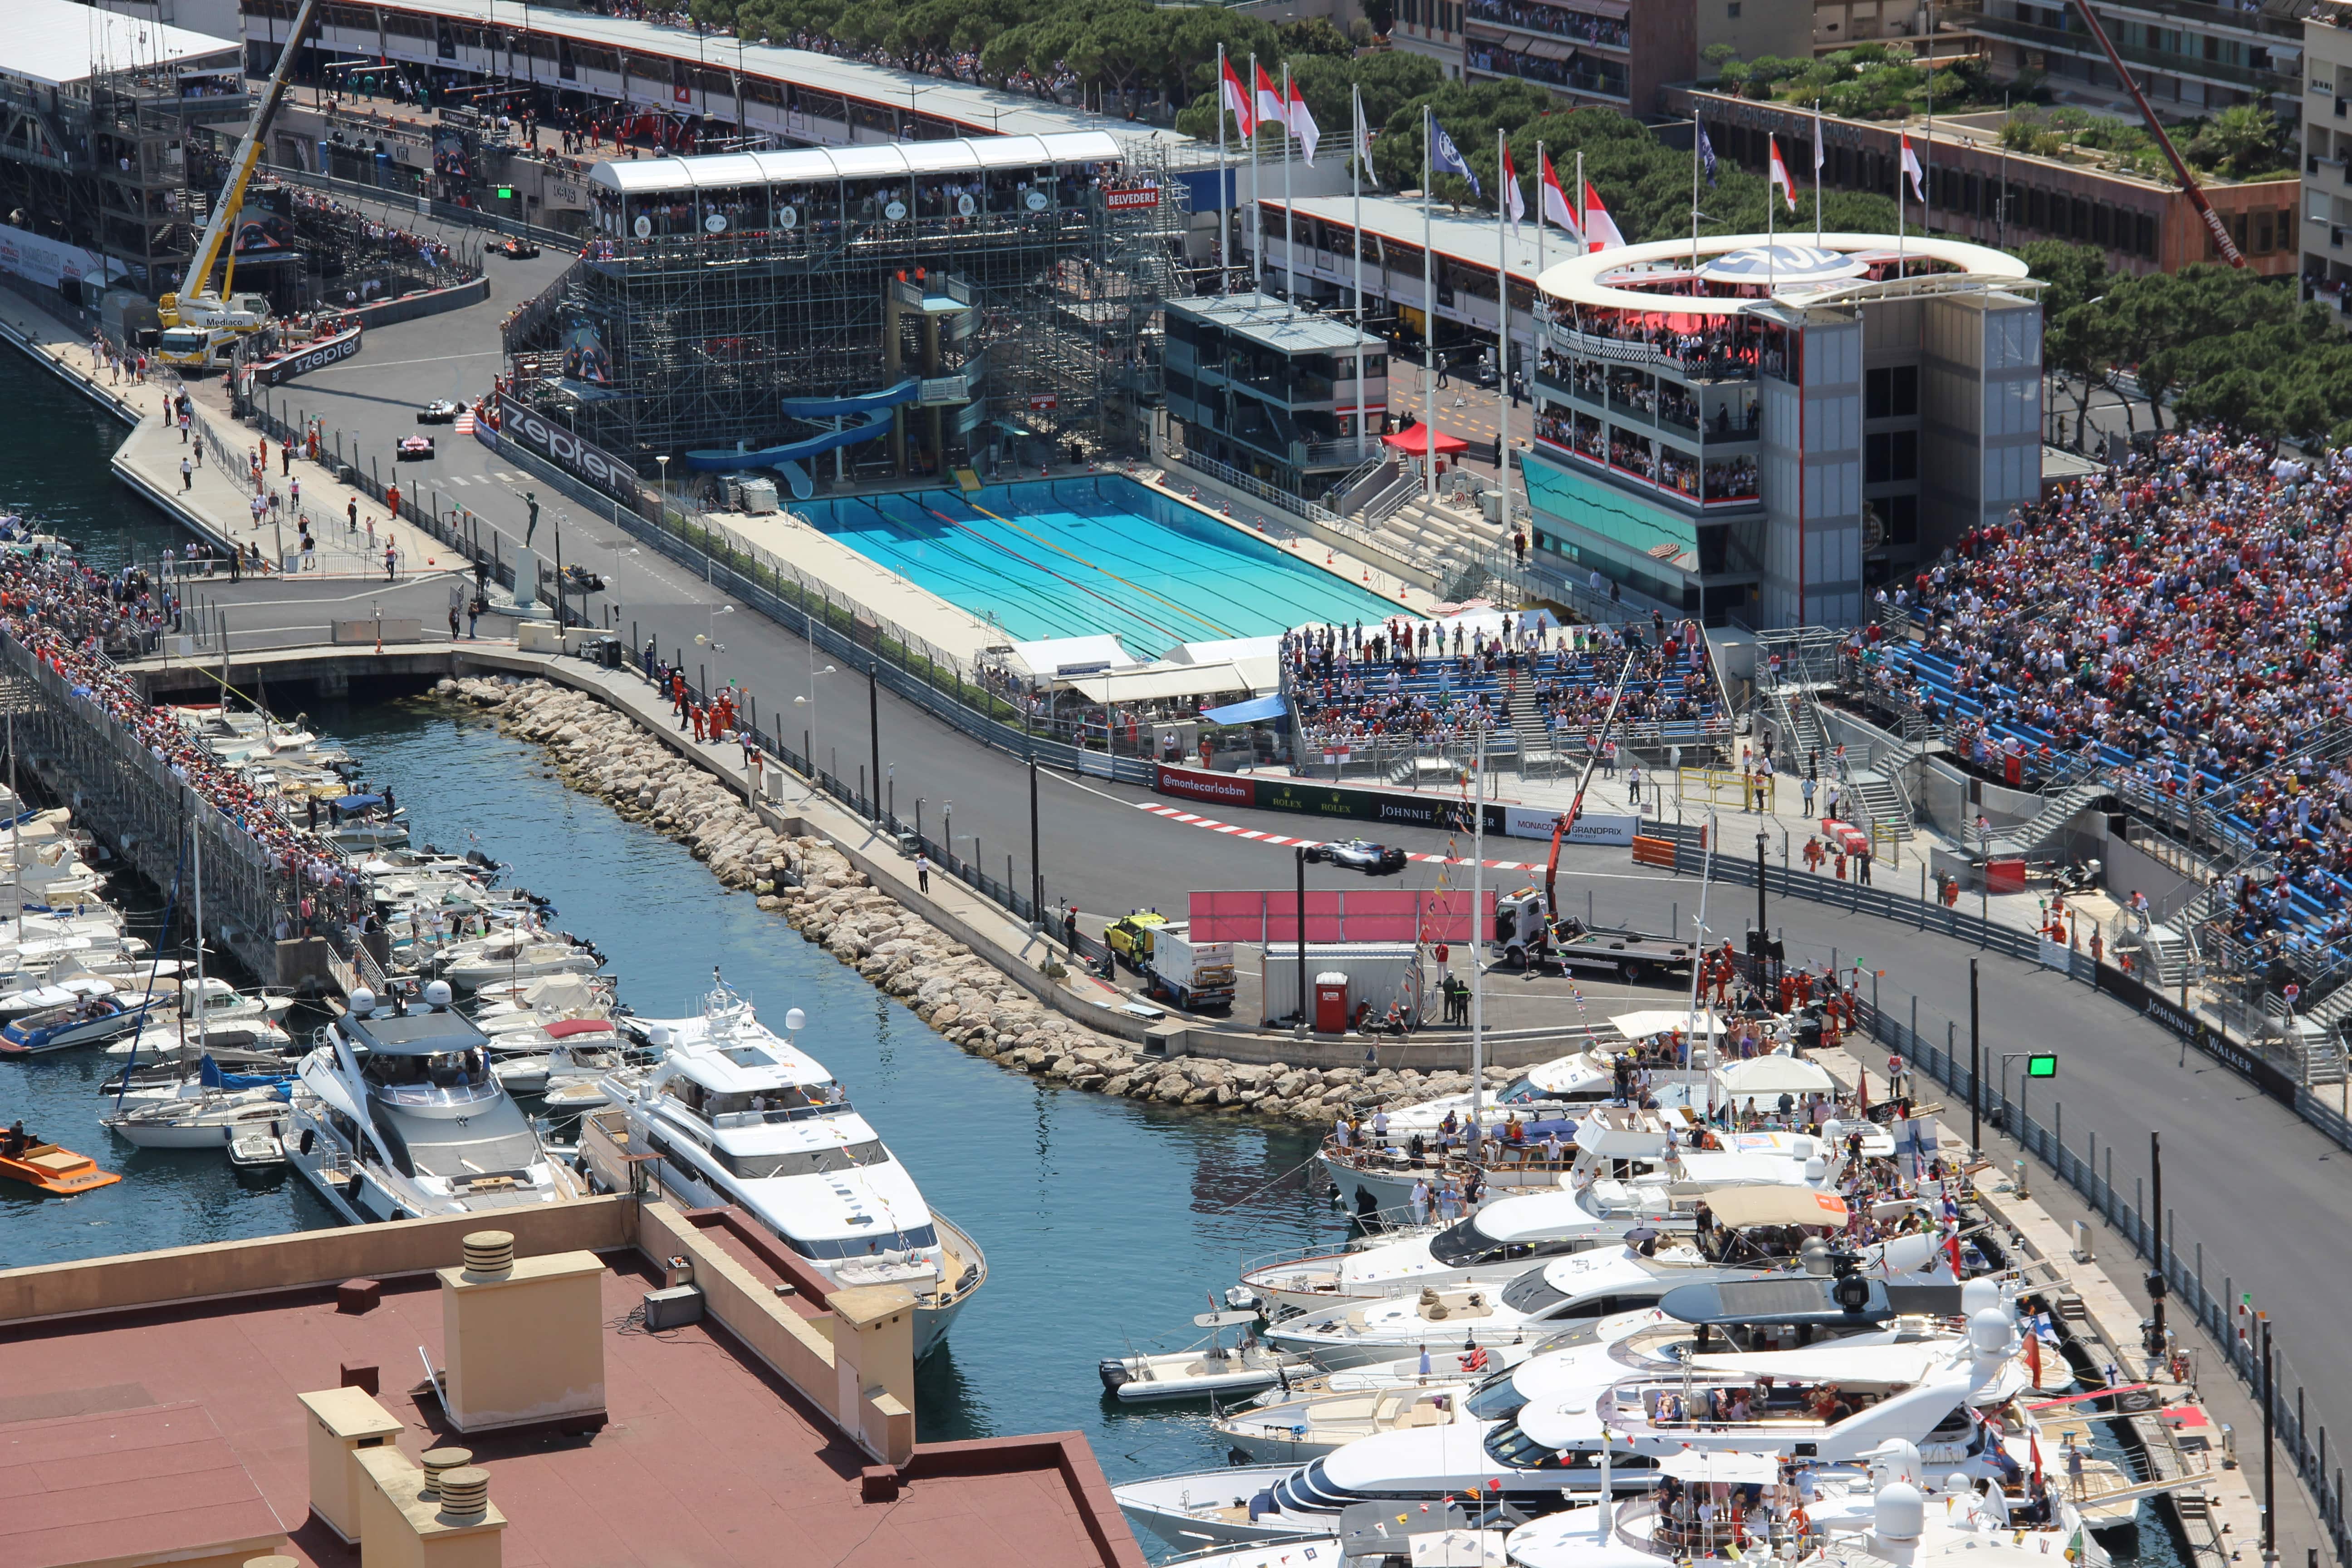 Meilleur endroit pour regarder Formula 1 GP Monaco? C'est la terrasse VIP de la Formule 1! Réservez votre place et se sentir comme un pilote de F1 !!!